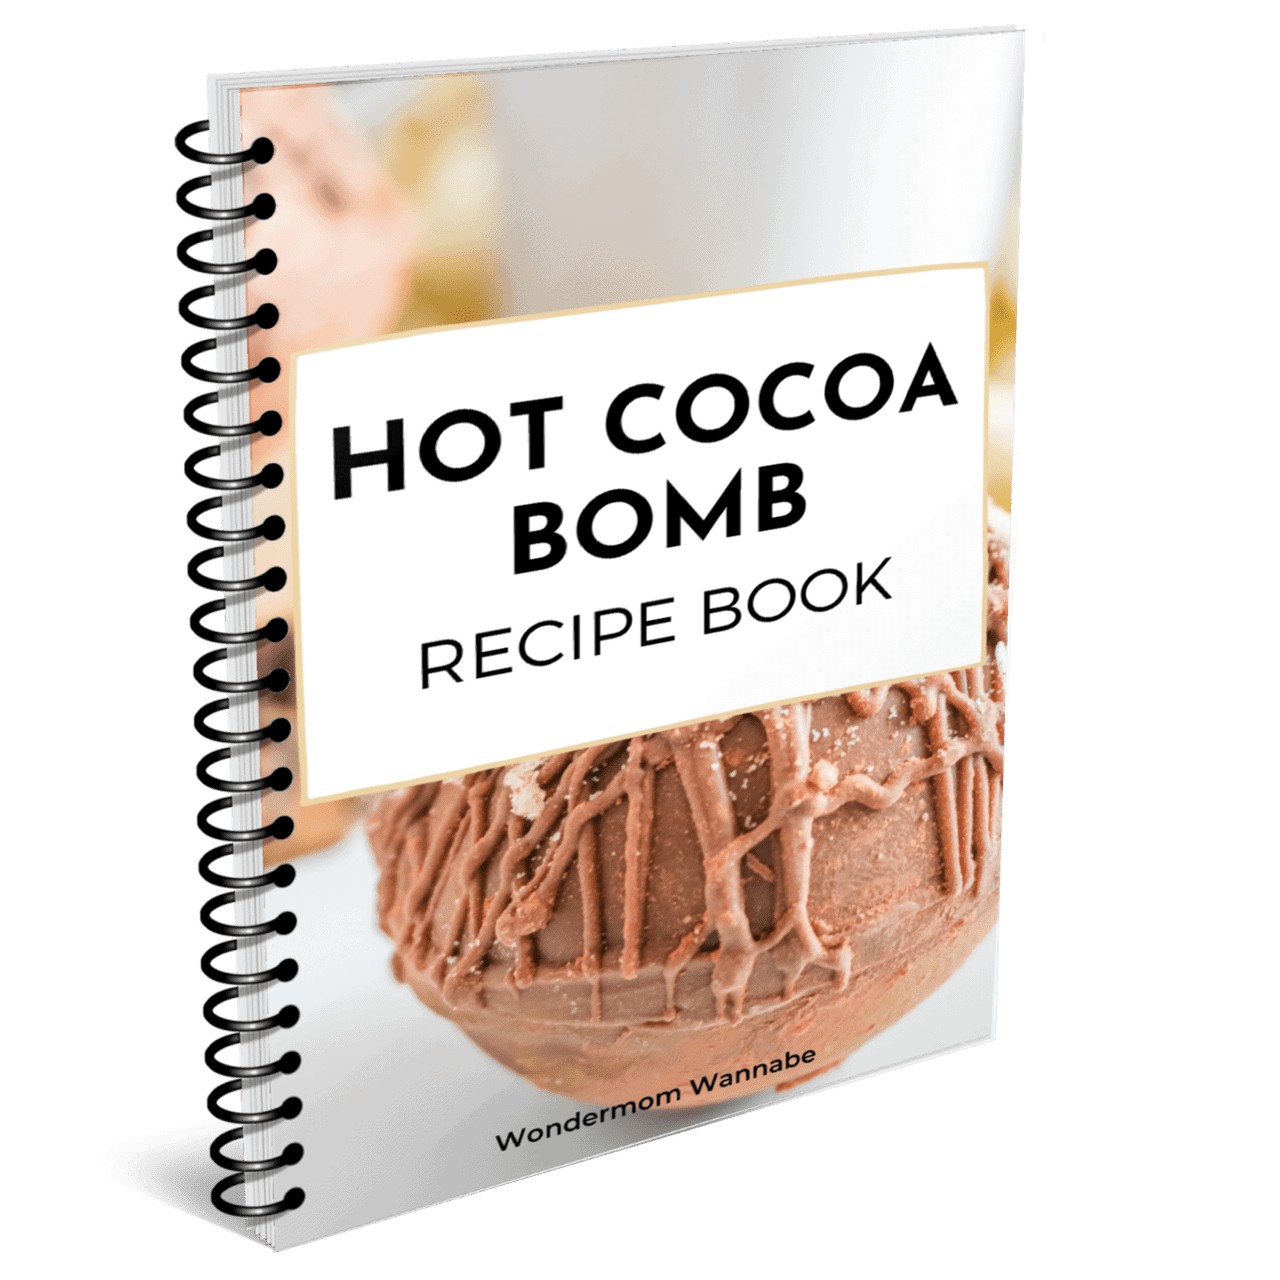 Hot Cocoa Bomb Recipe Book